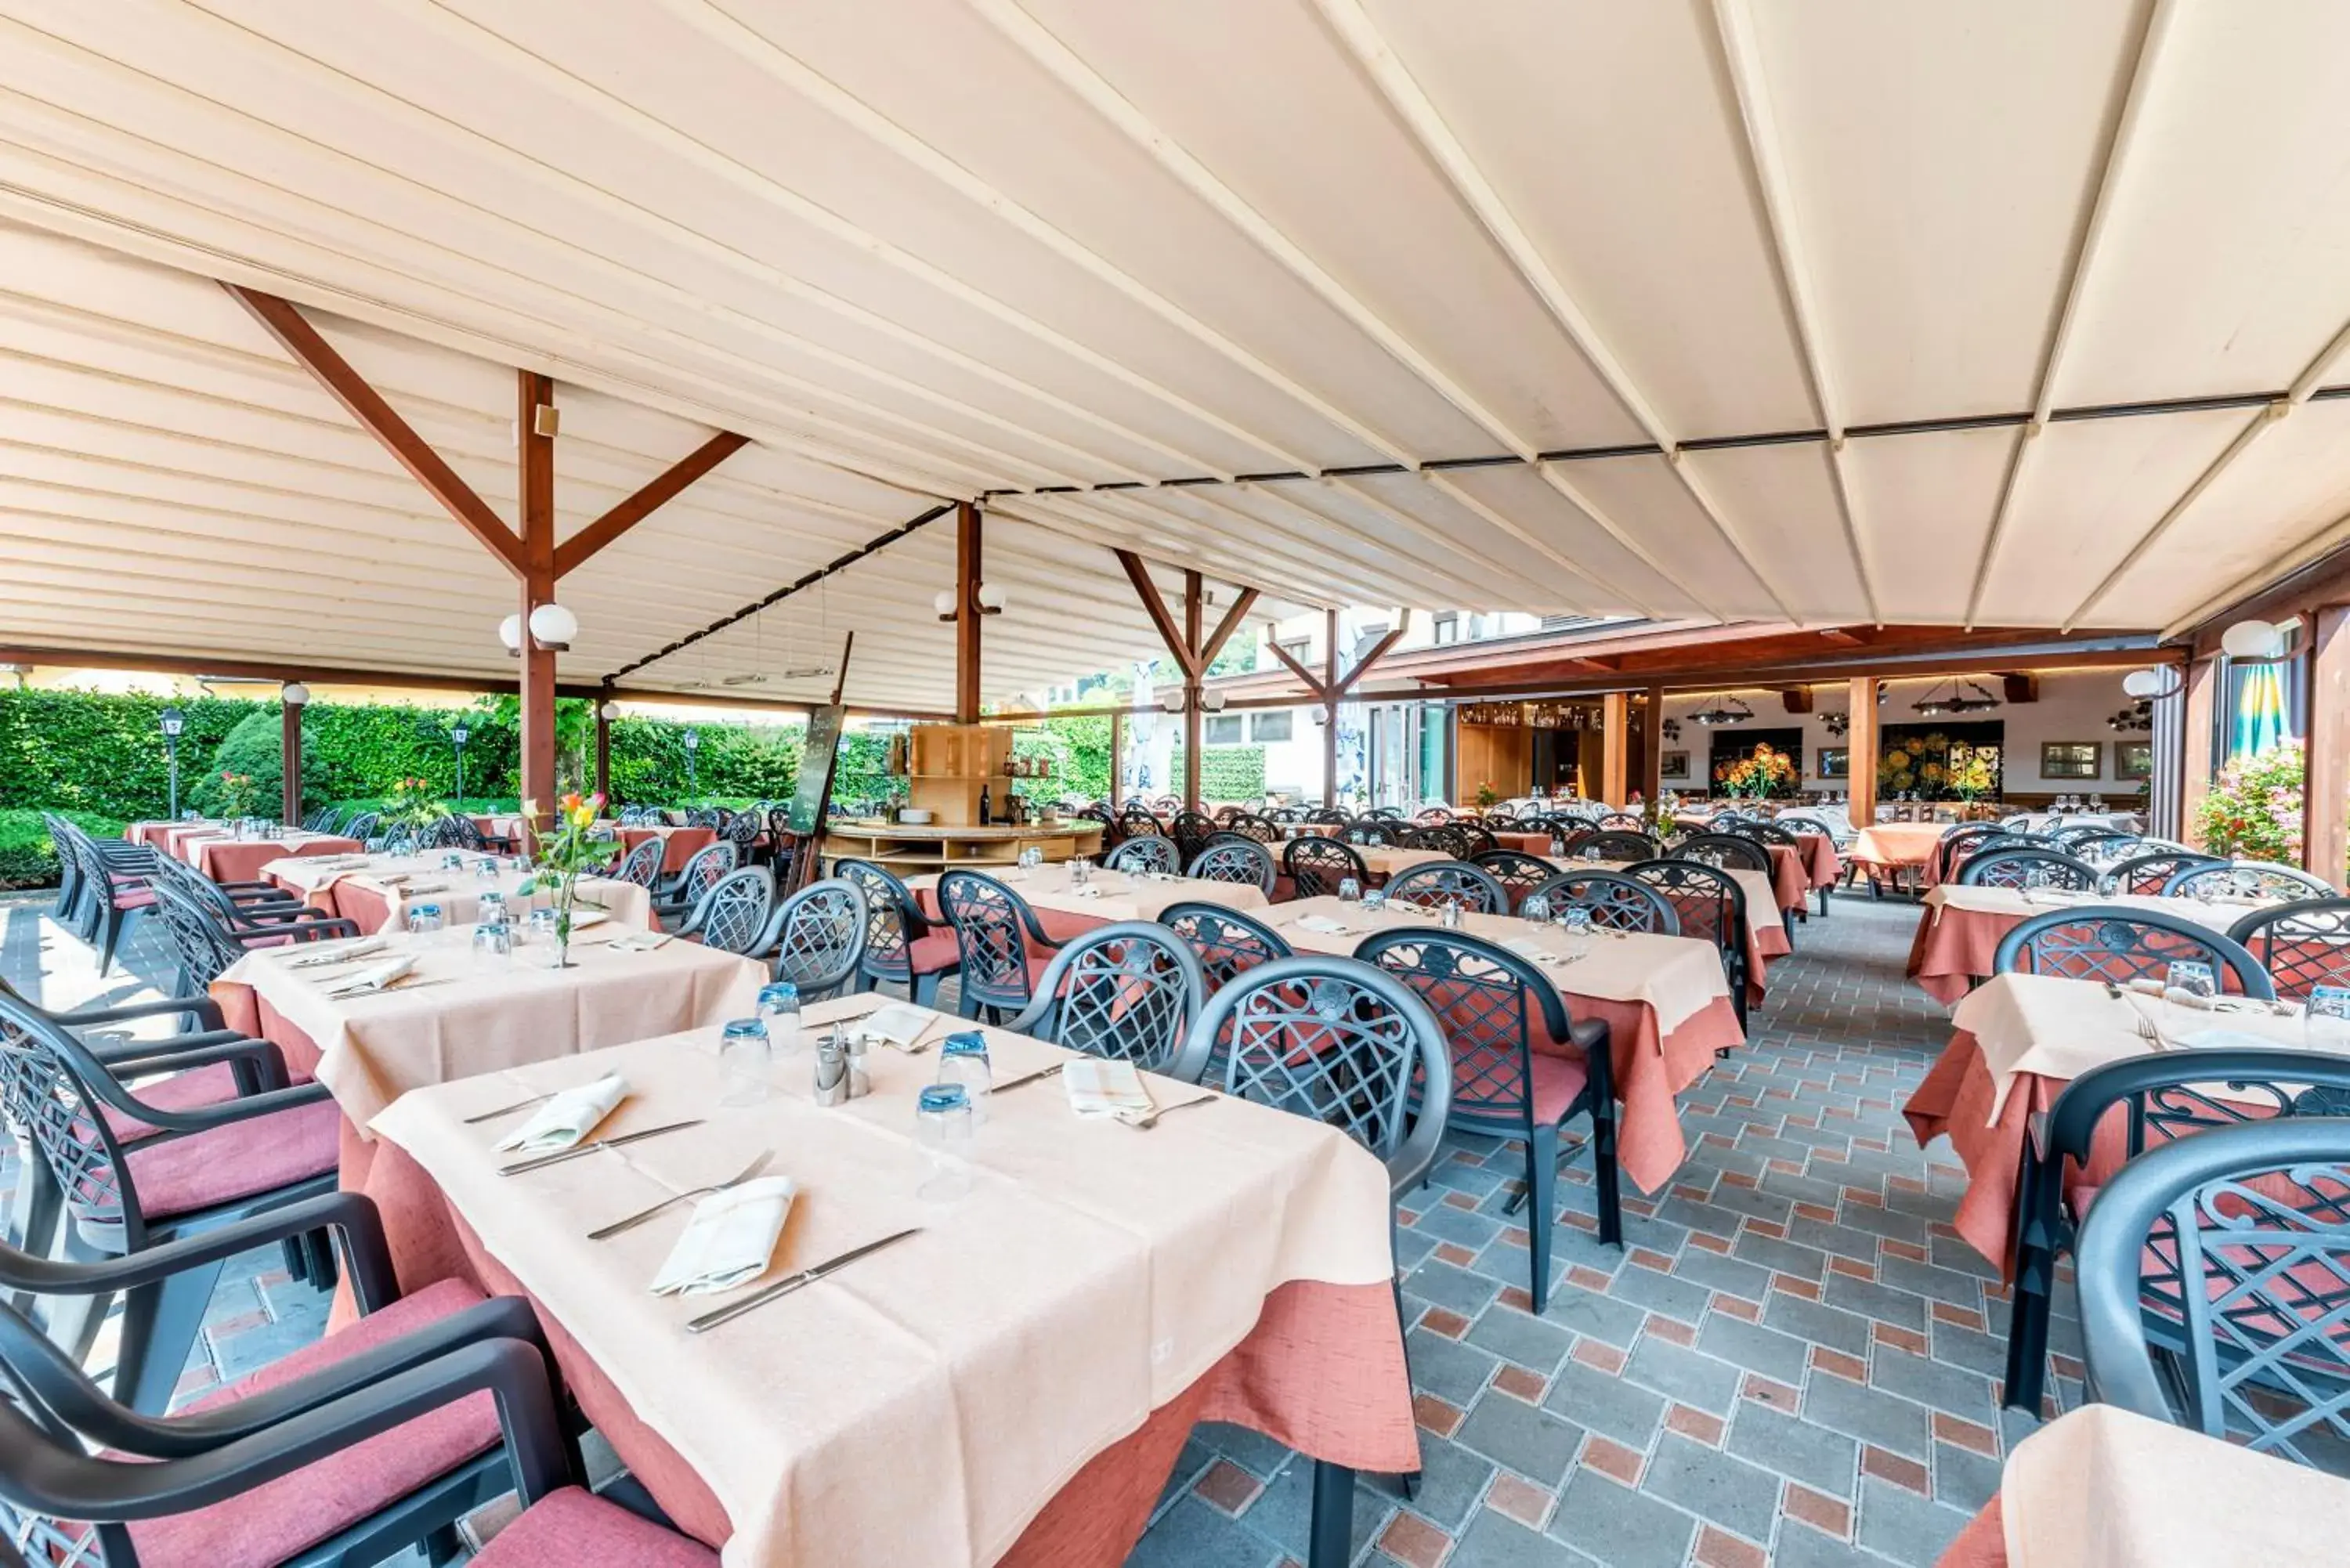 Restaurant/Places to Eat in Albergo Ristorante Svizzero